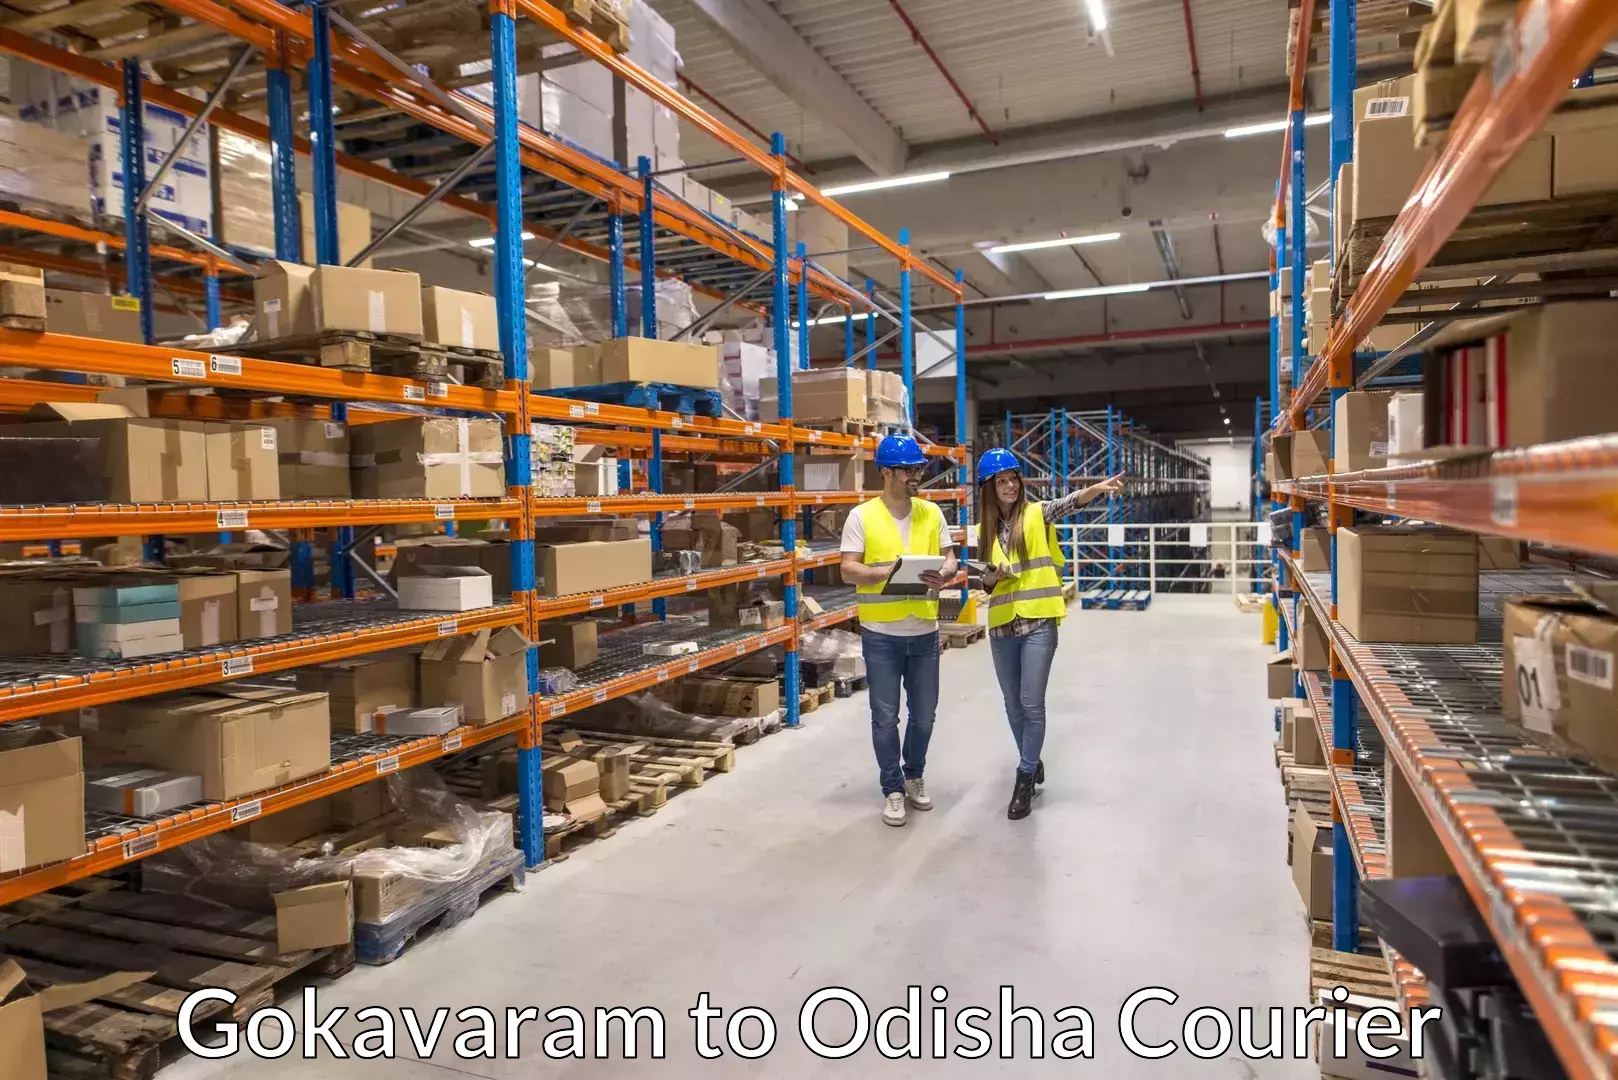 Professional movers and packers Gokavaram to Umerkote